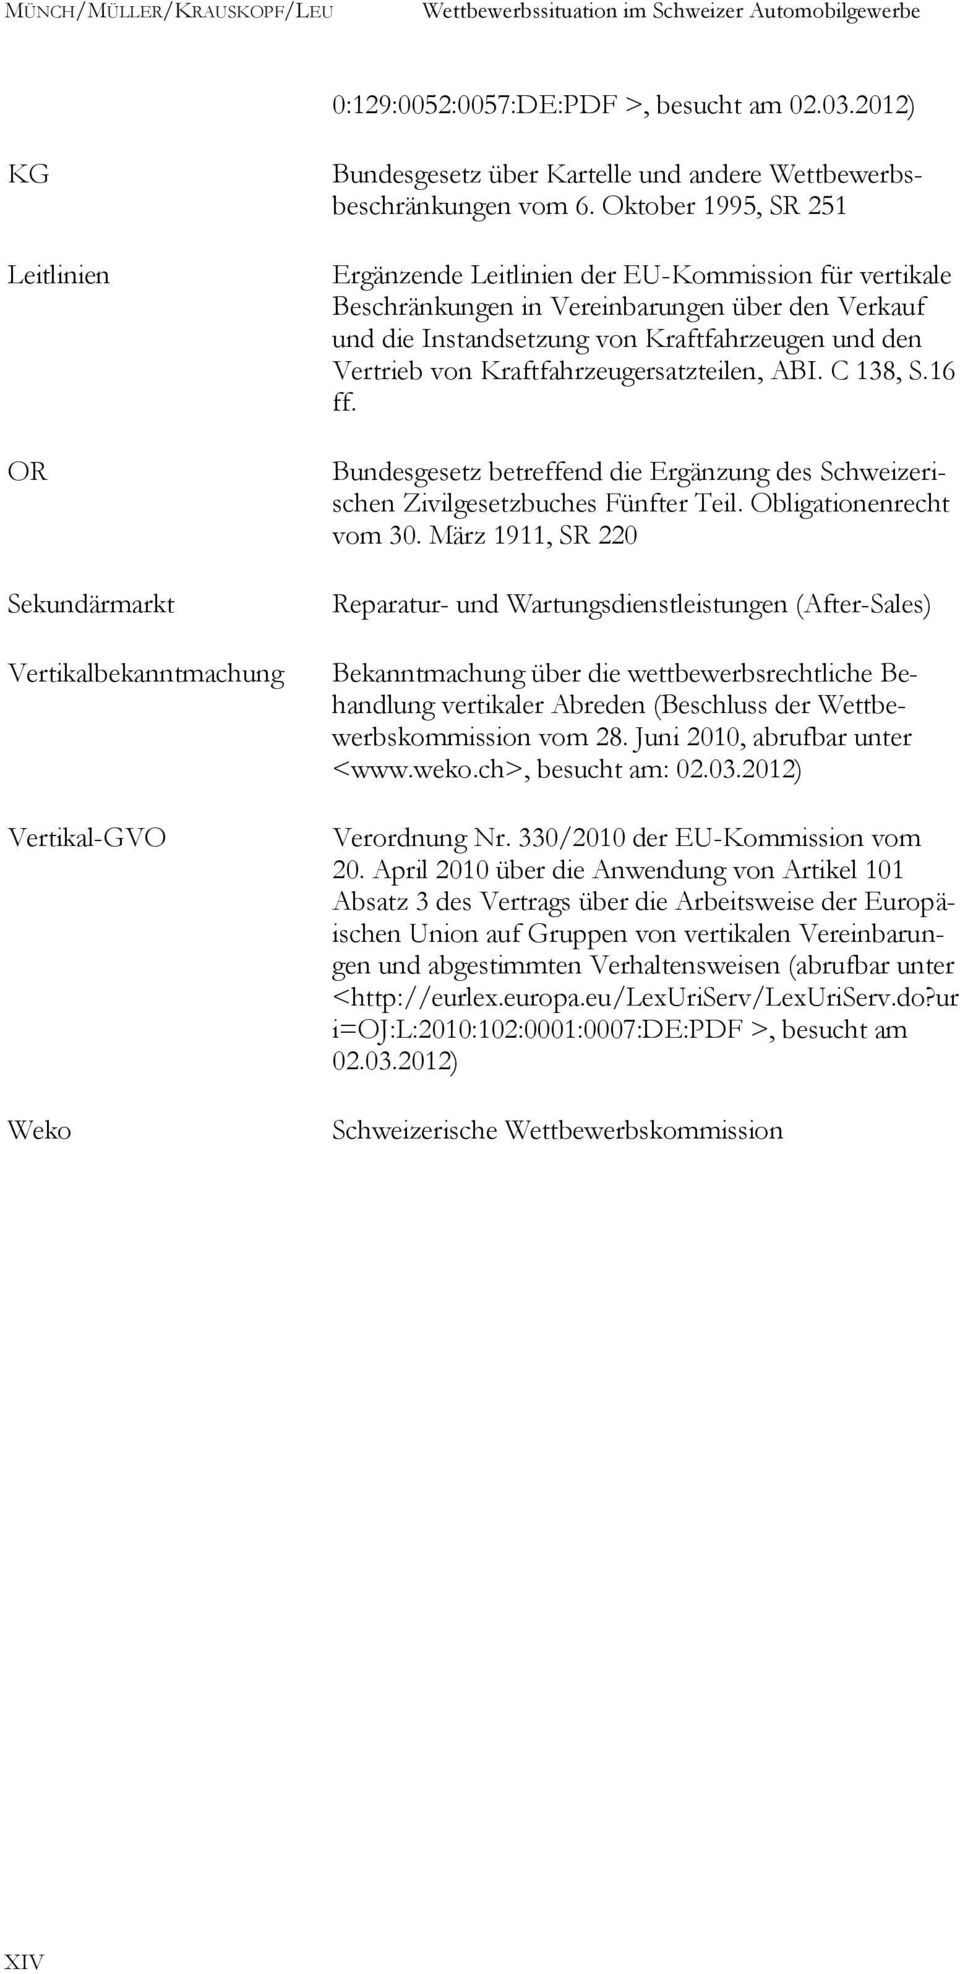 Kraftfahrzeugersatzteilen, ABI. C 138, S.16 ff. Bundesgesetz betreffend die Ergänzung des Schweizerischen Zivilgesetzbuches Fünfter Teil. Obligationenrecht vom 30.